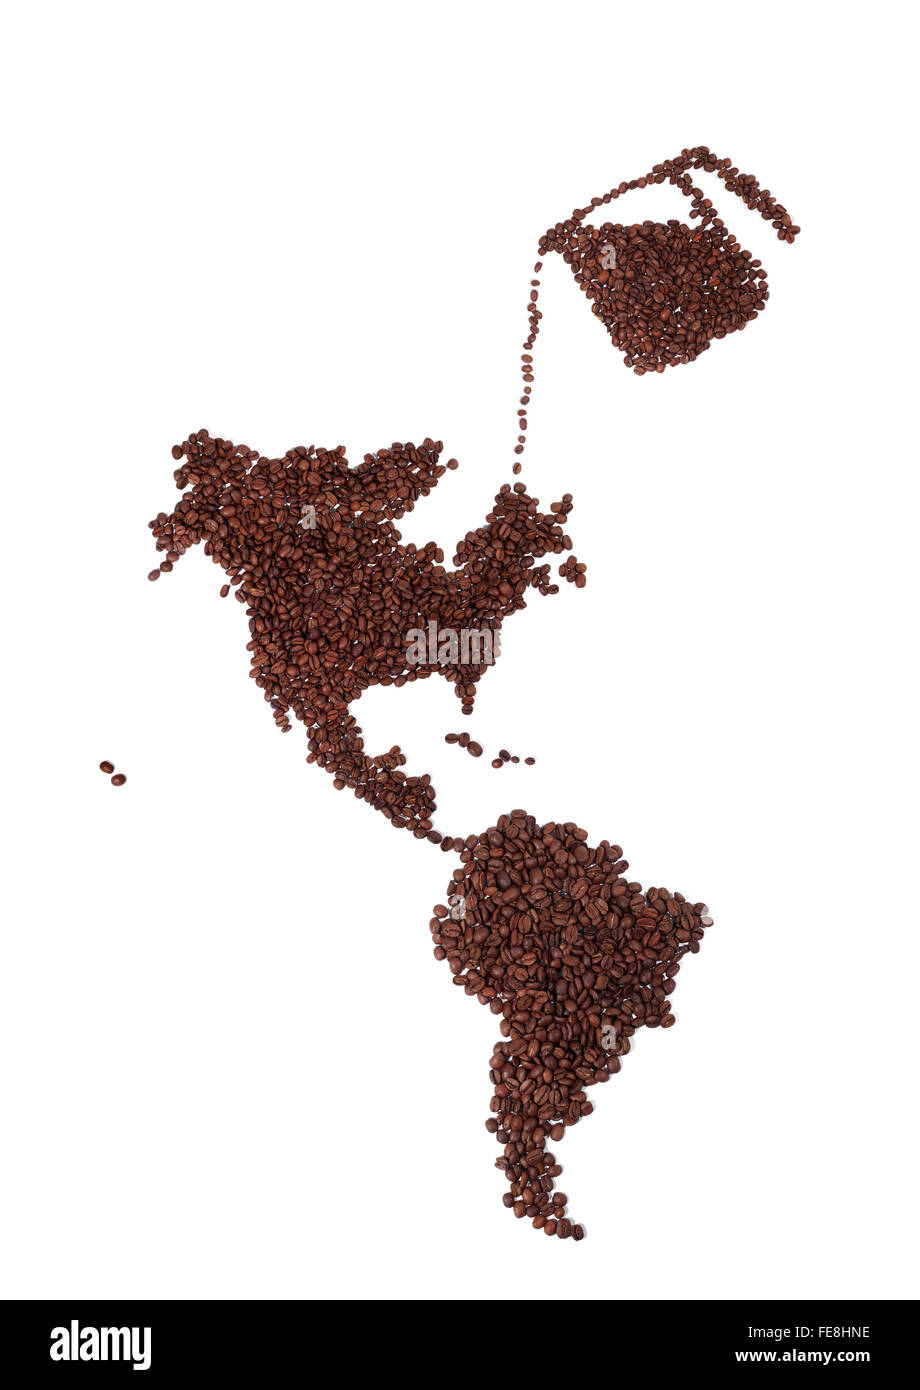 Kännchen Kaffee Bohnen auf einer Karte von Nordamerika alle gemacht von Brown, frisch gerösteten Kaffeebohnen gießen Stockfoto